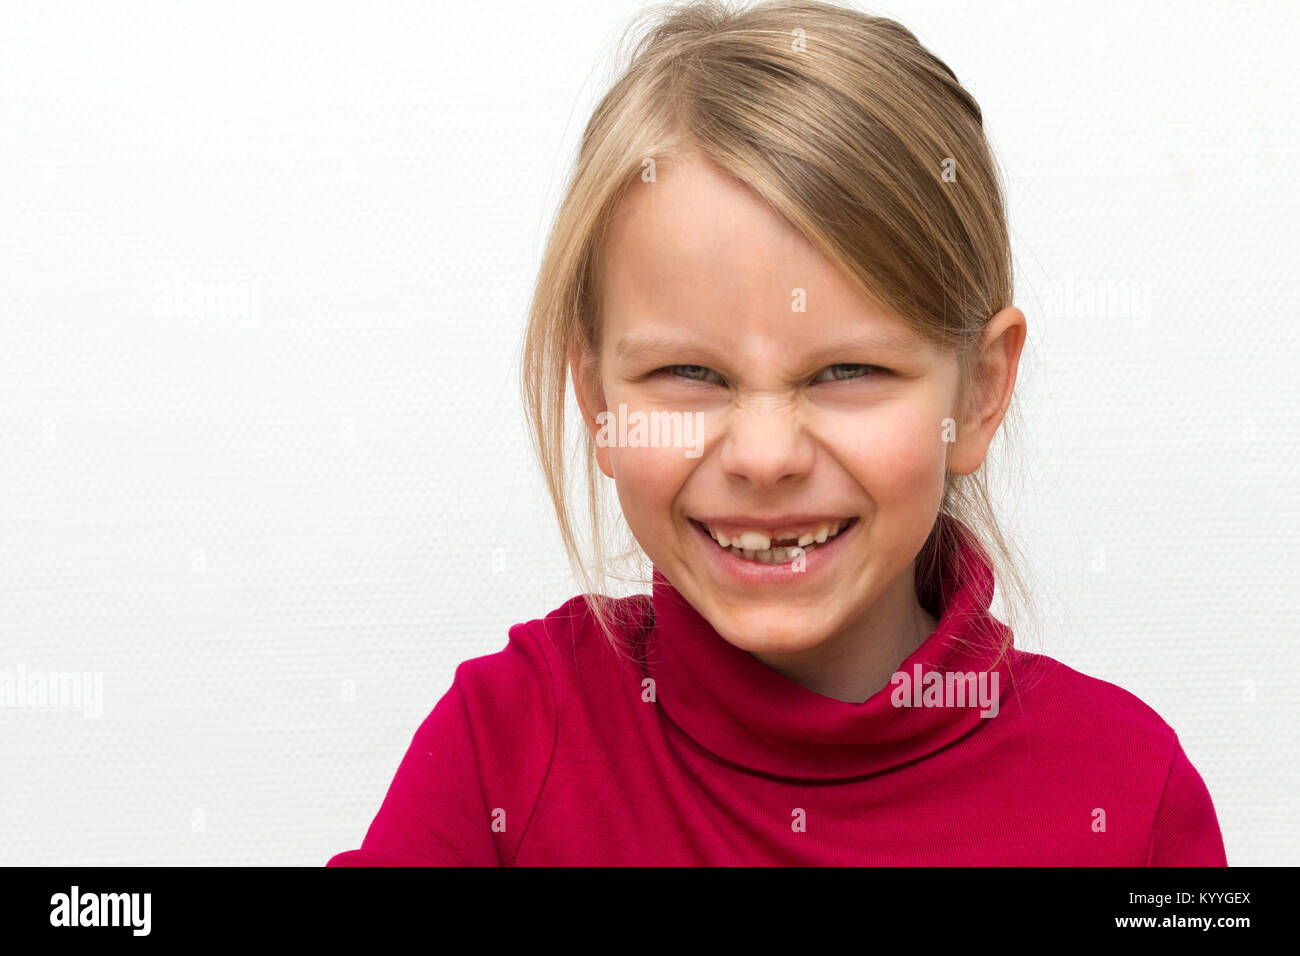 Portrait d'une 6 ans fille blonde. Elle porte un col roulé rouge et a une transmission de rire Banque D'Images